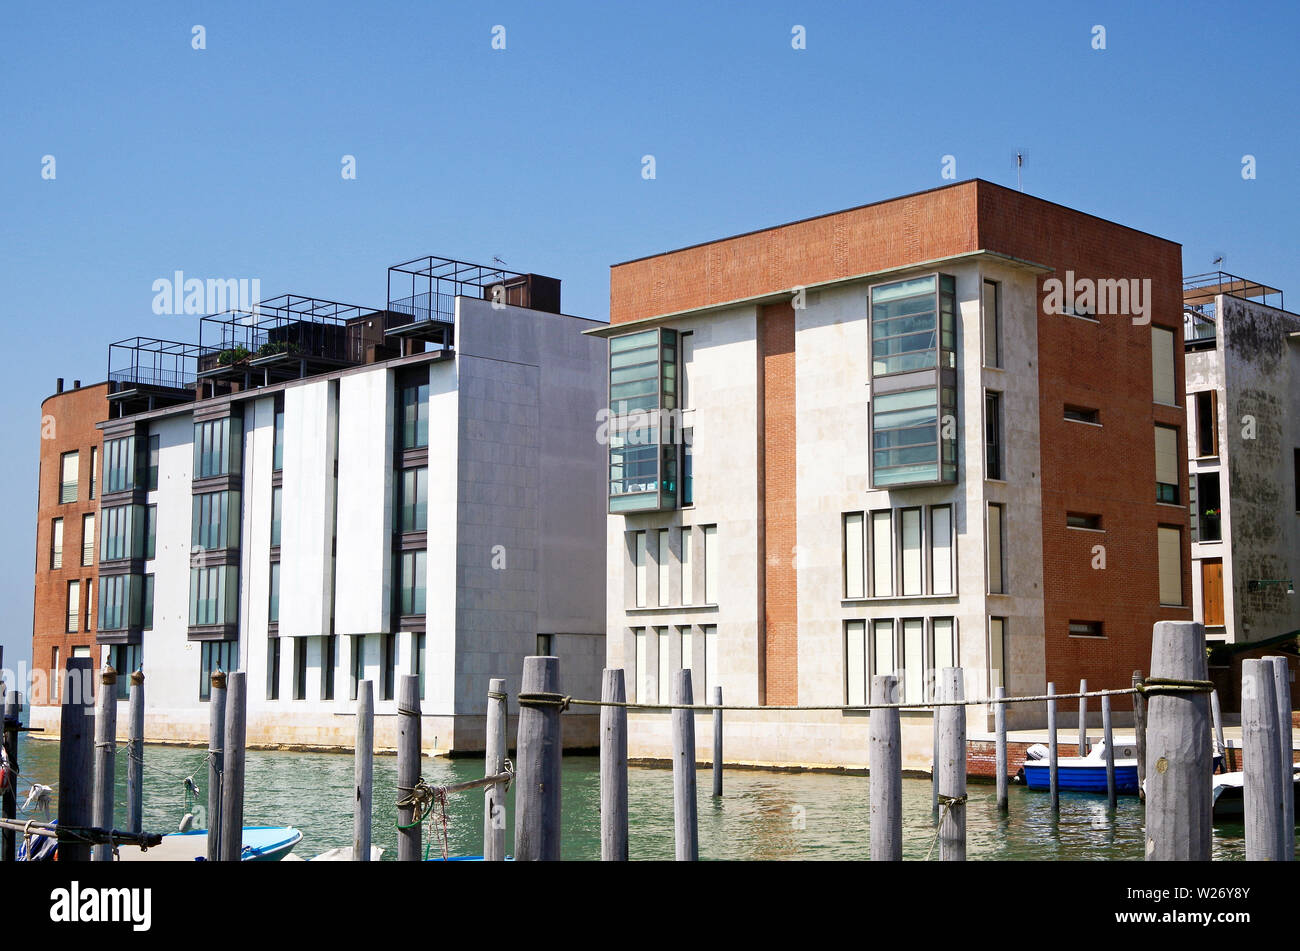 Venise, Italie, de nouveaux immeubles à appartements dans un trimestre appelé Judeca Nova sur le côté sud de l'île de Giudecca Banque D'Images